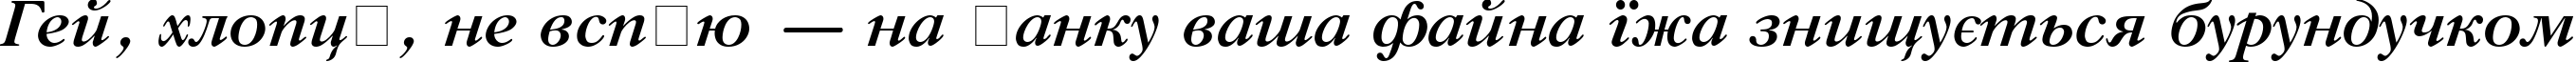 Пример написания шрифтом GazetaTitul Bold Italic текста на украинском